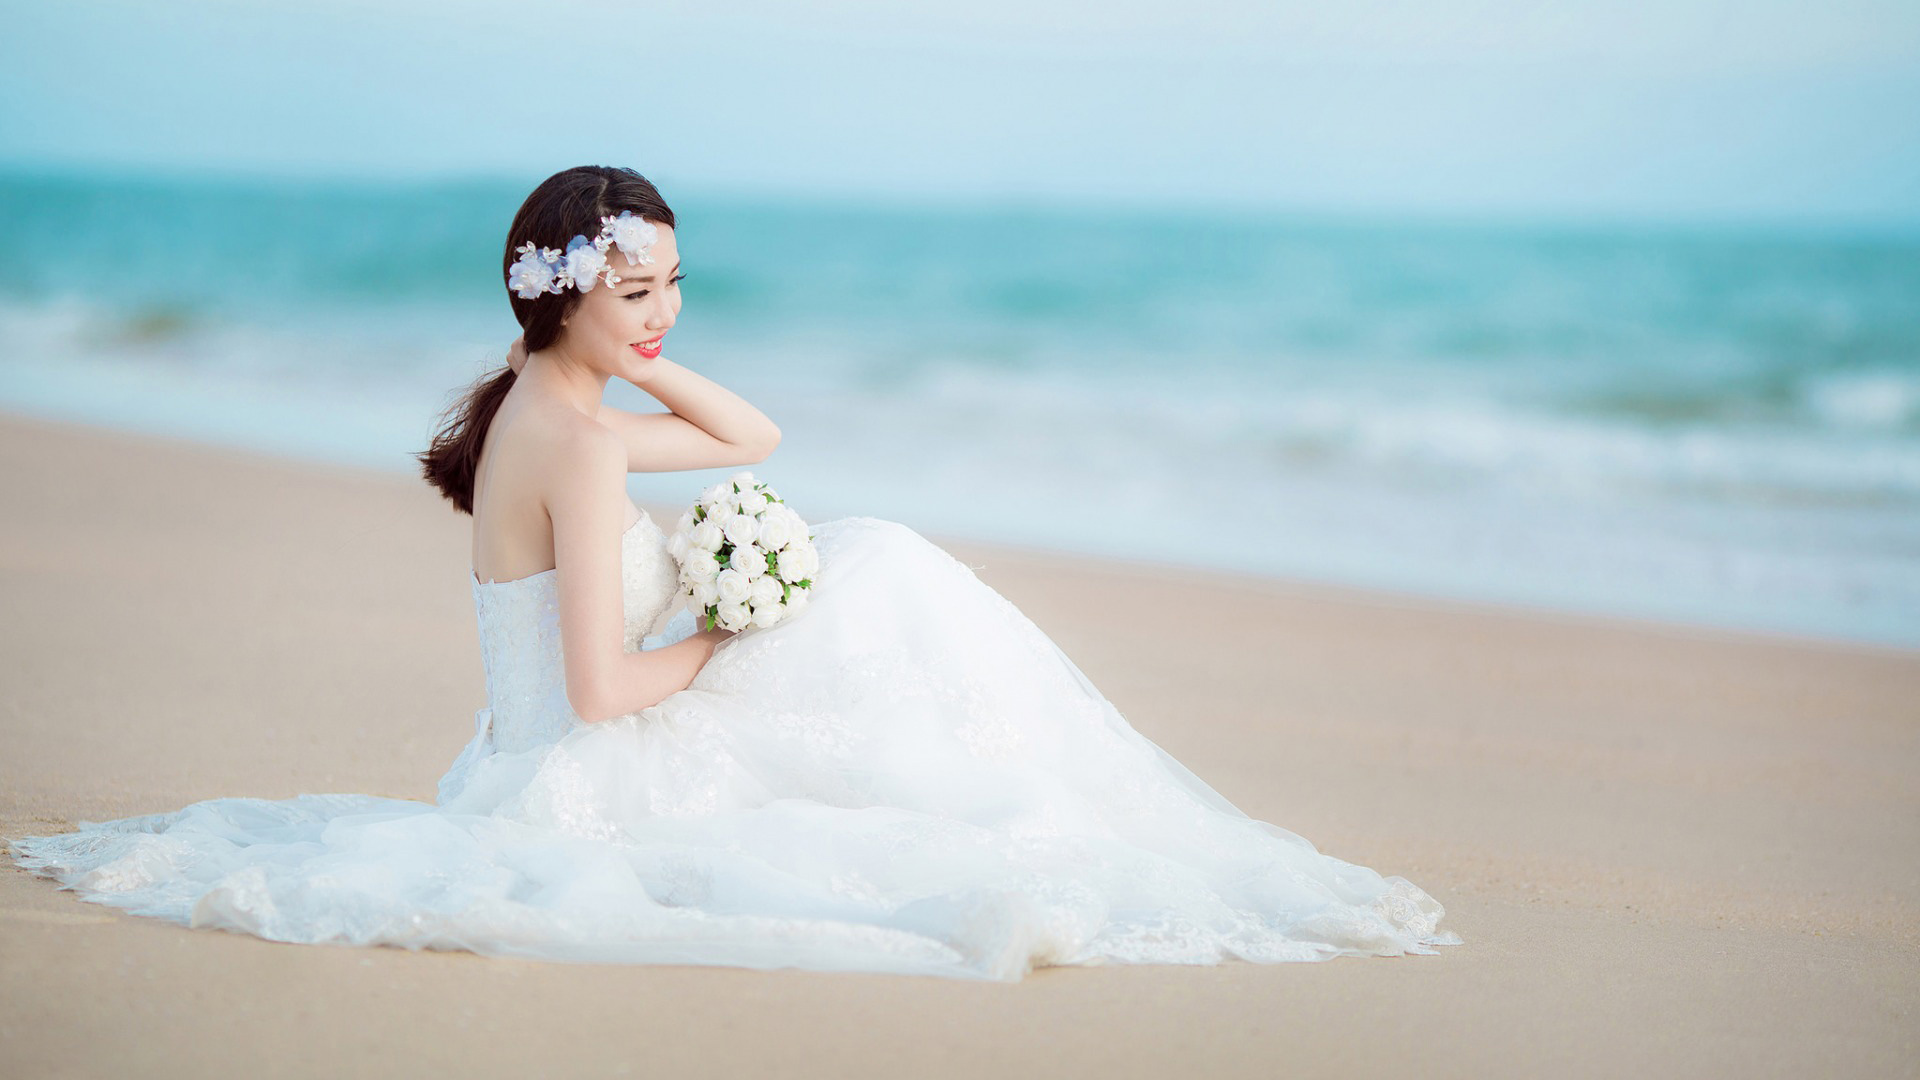 新娘,微笑,婚纱礼服,鲜花,沙滩,大海,美女婚纱照壁纸